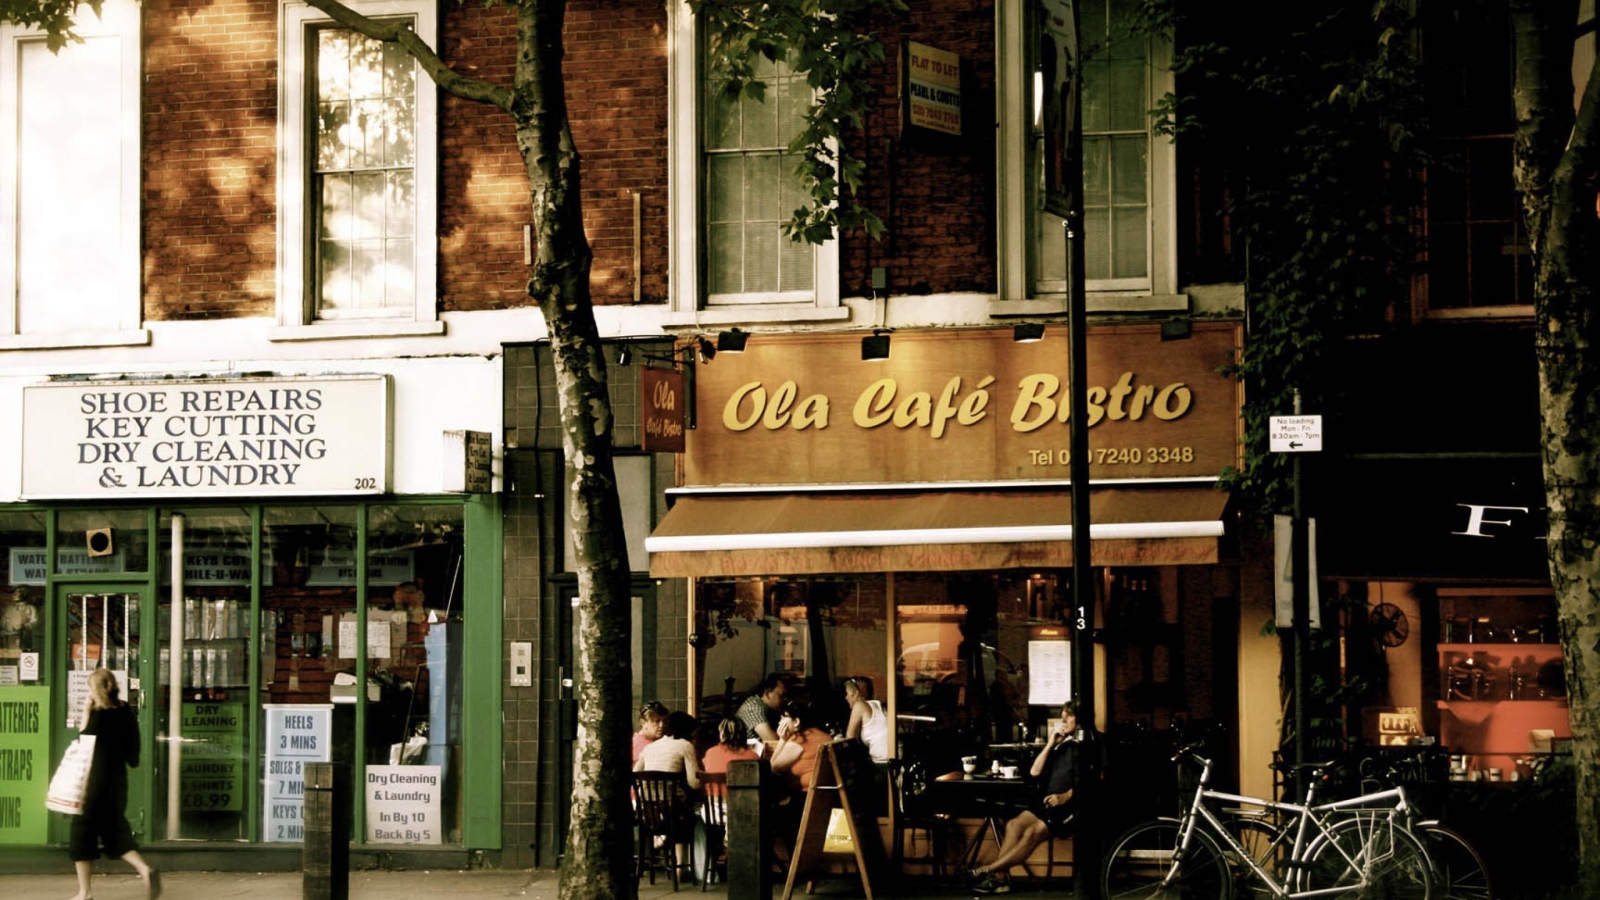 City cafe